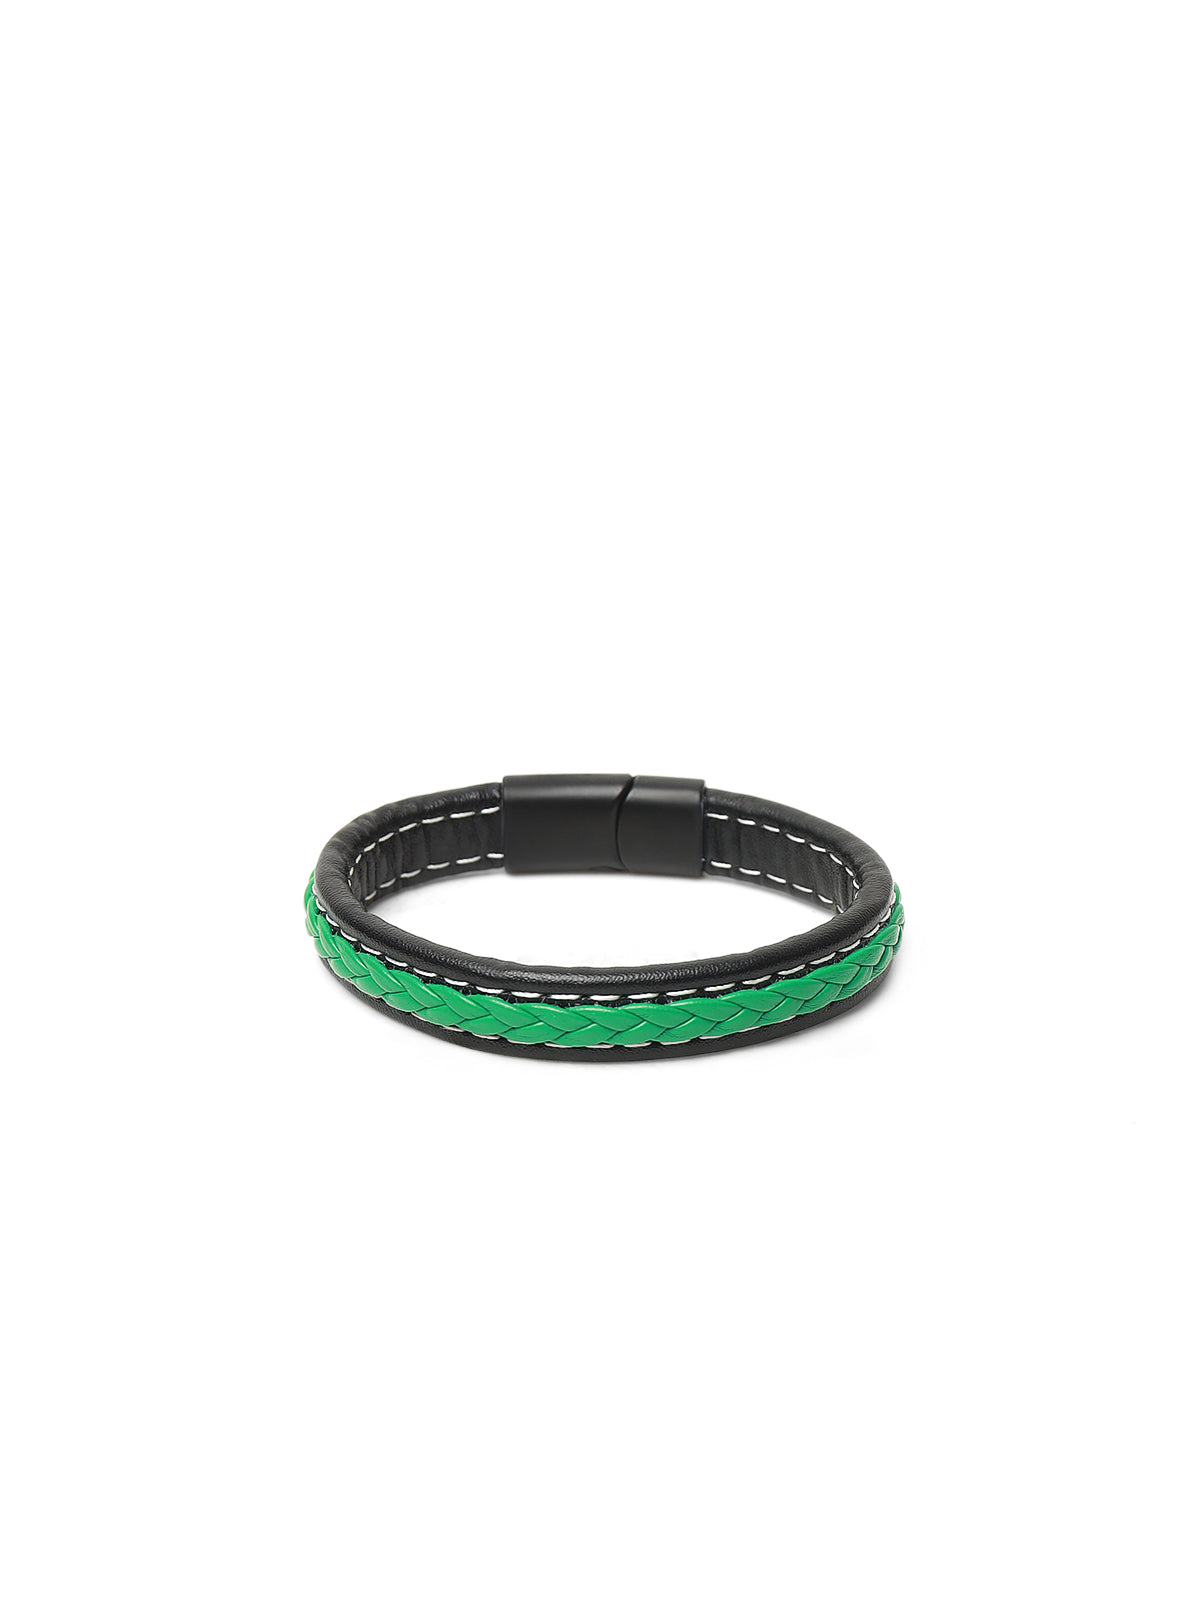 Green Leather Bracelet - FABR24-018